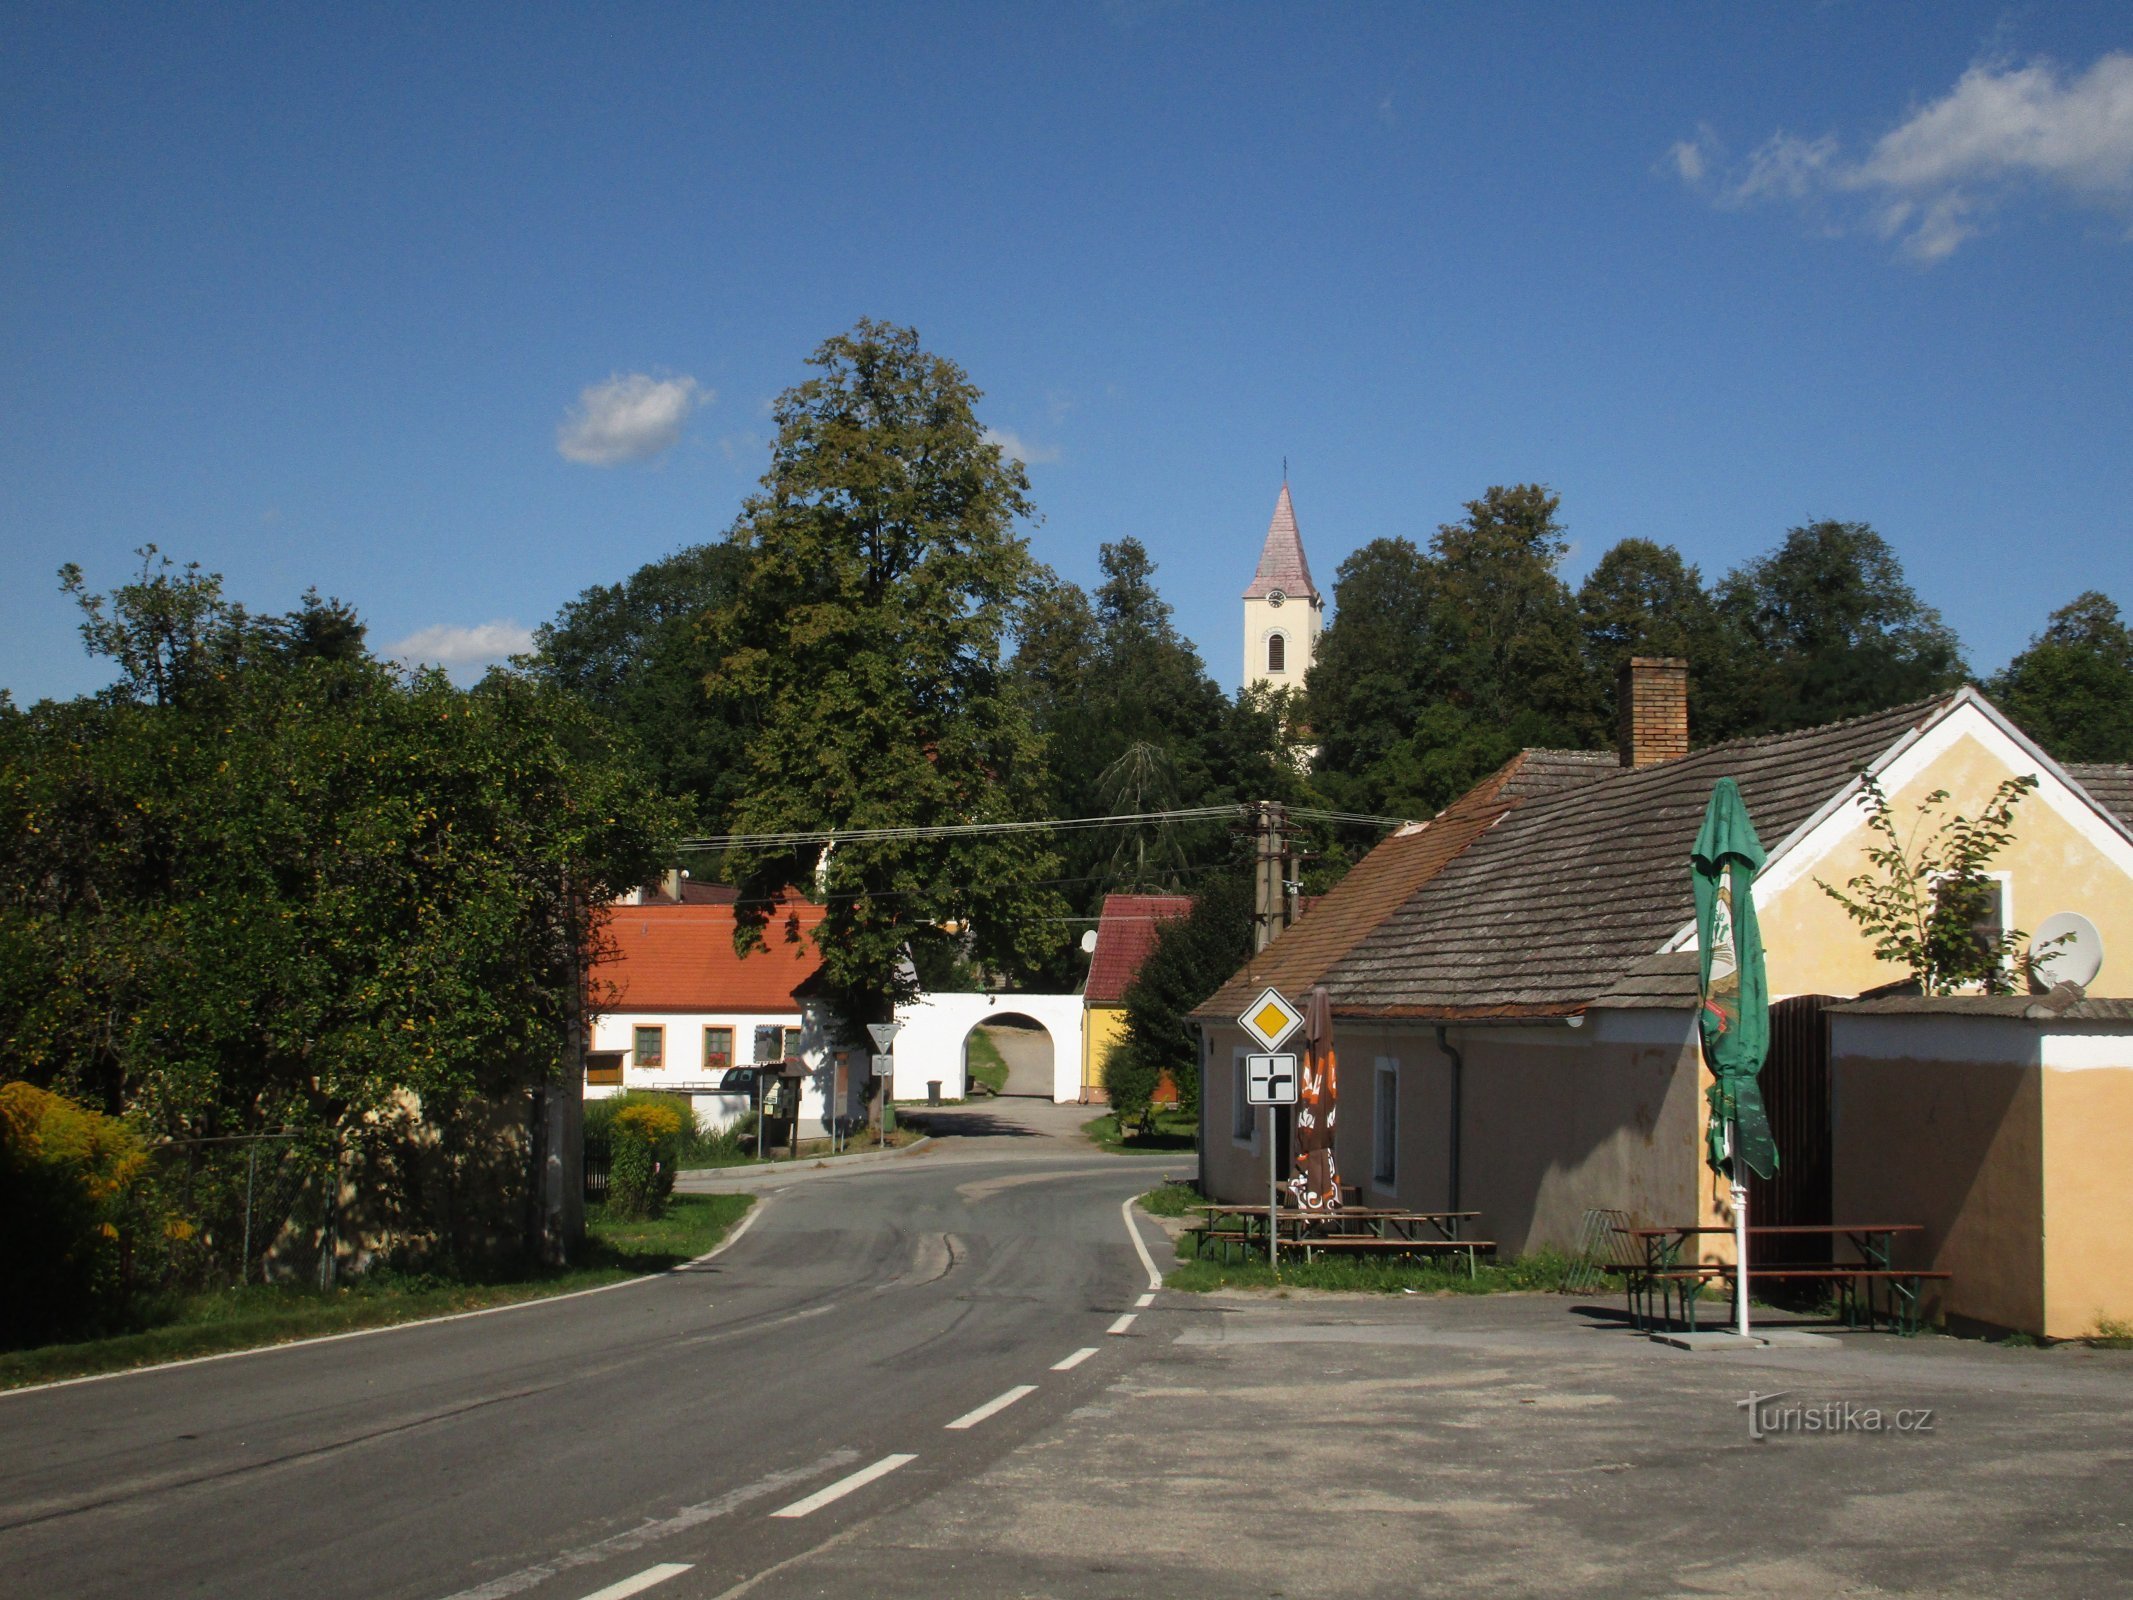 вид на село з дороги 153, що йде від Chlum u Třeboň